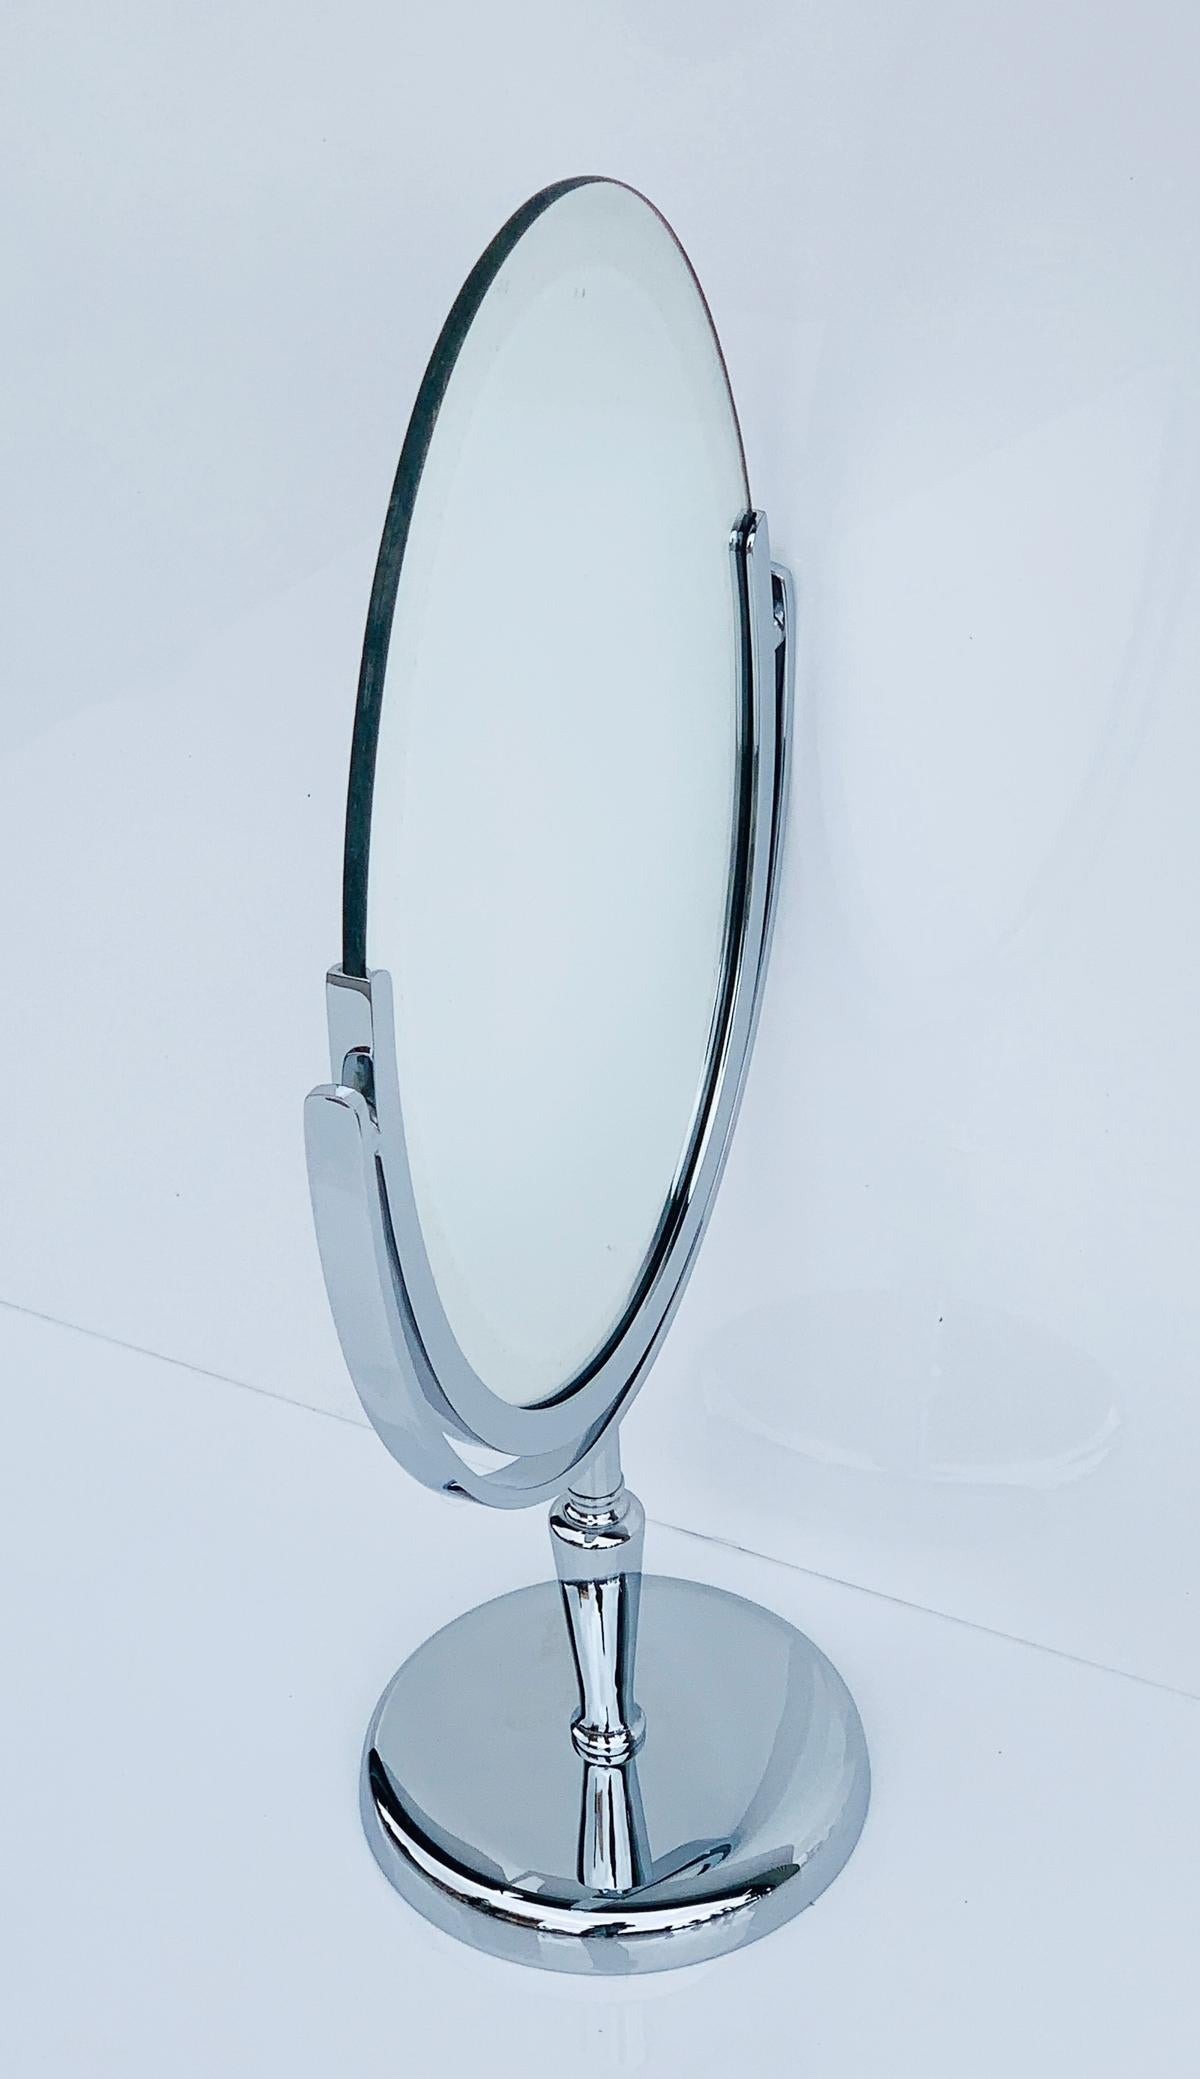 Der exquisite Charles Hollis Jones Vanity Mirror in poliertem Nickel ist eine atemberaubende Ergänzung für jeden eleganten Raum. Dieser mit äußerster Präzision gefertigte, vernickelte Spiegel auf Ständer ist ein Beispiel für unvergleichliche